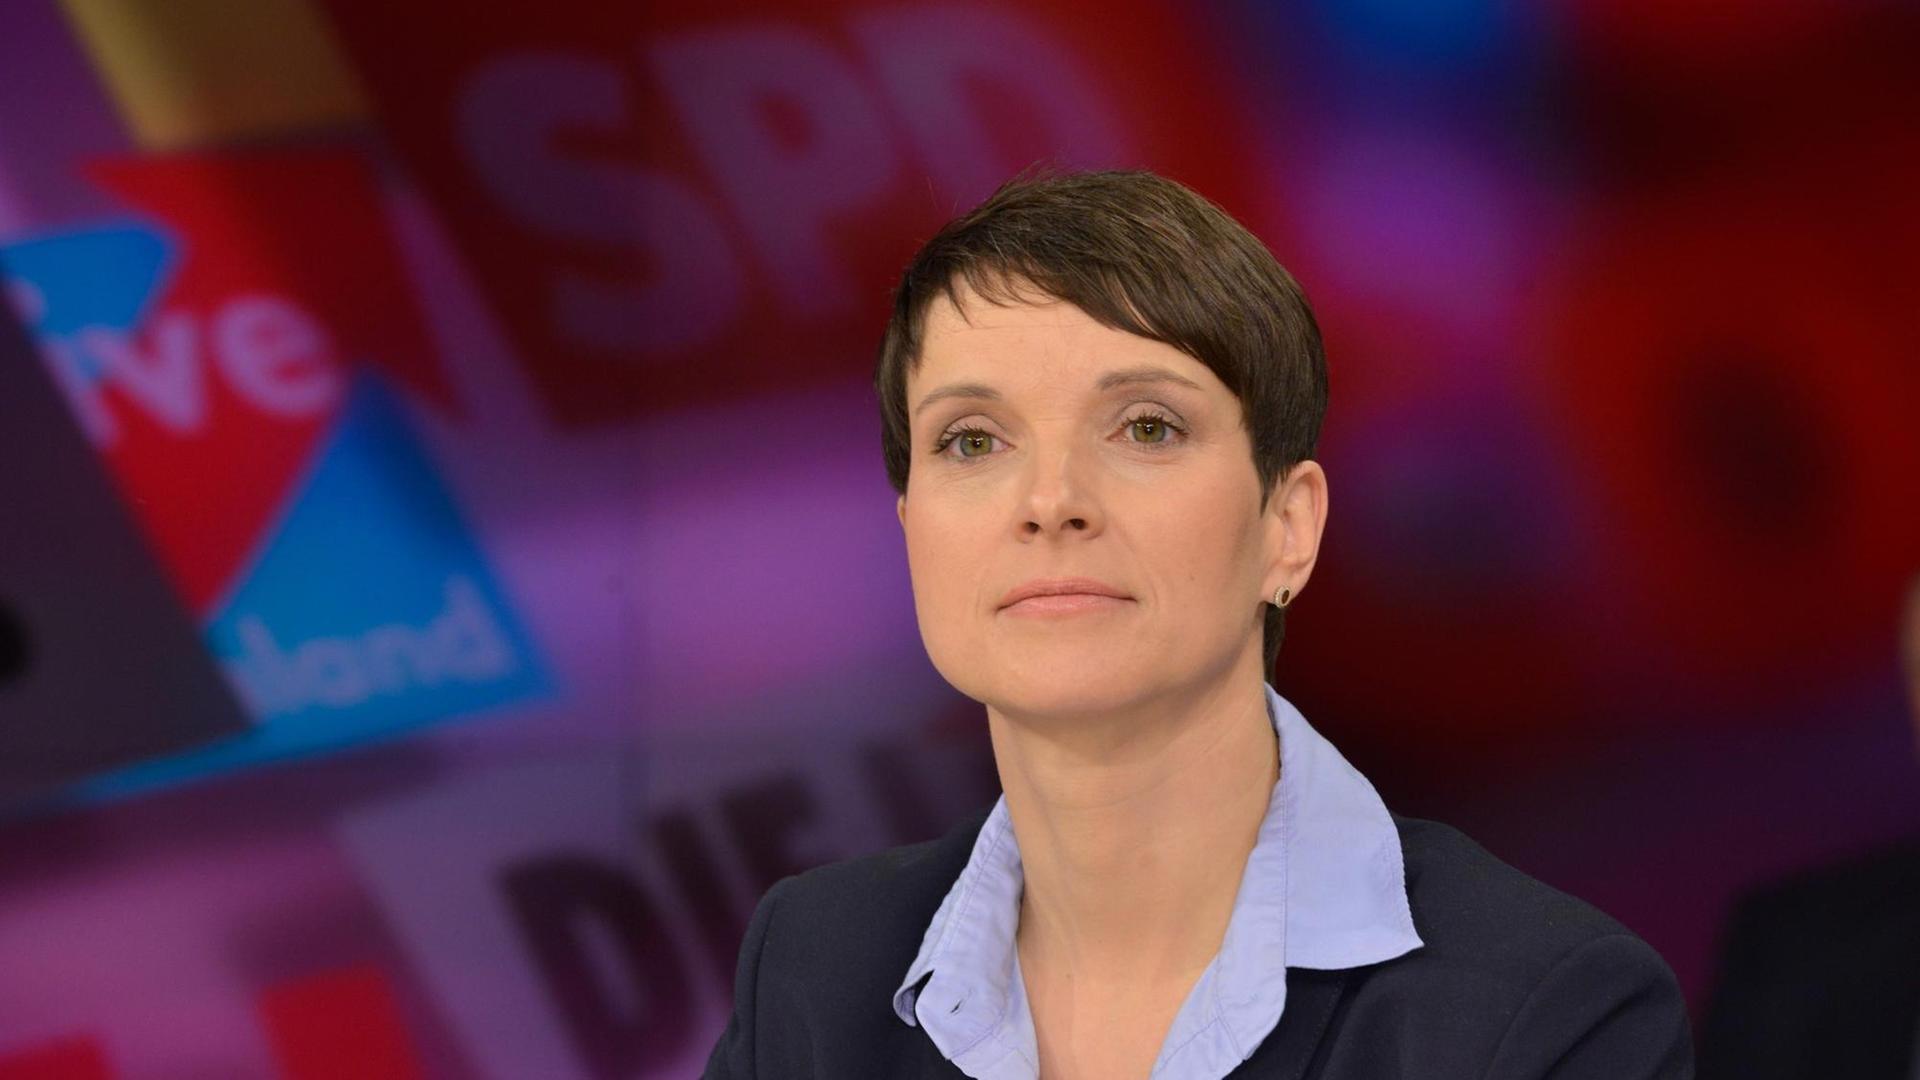 Frauke Petry, die Chefin der AfD. Auf der Wand hinter ihr stehen die Logos der großen deutschen Parteien.